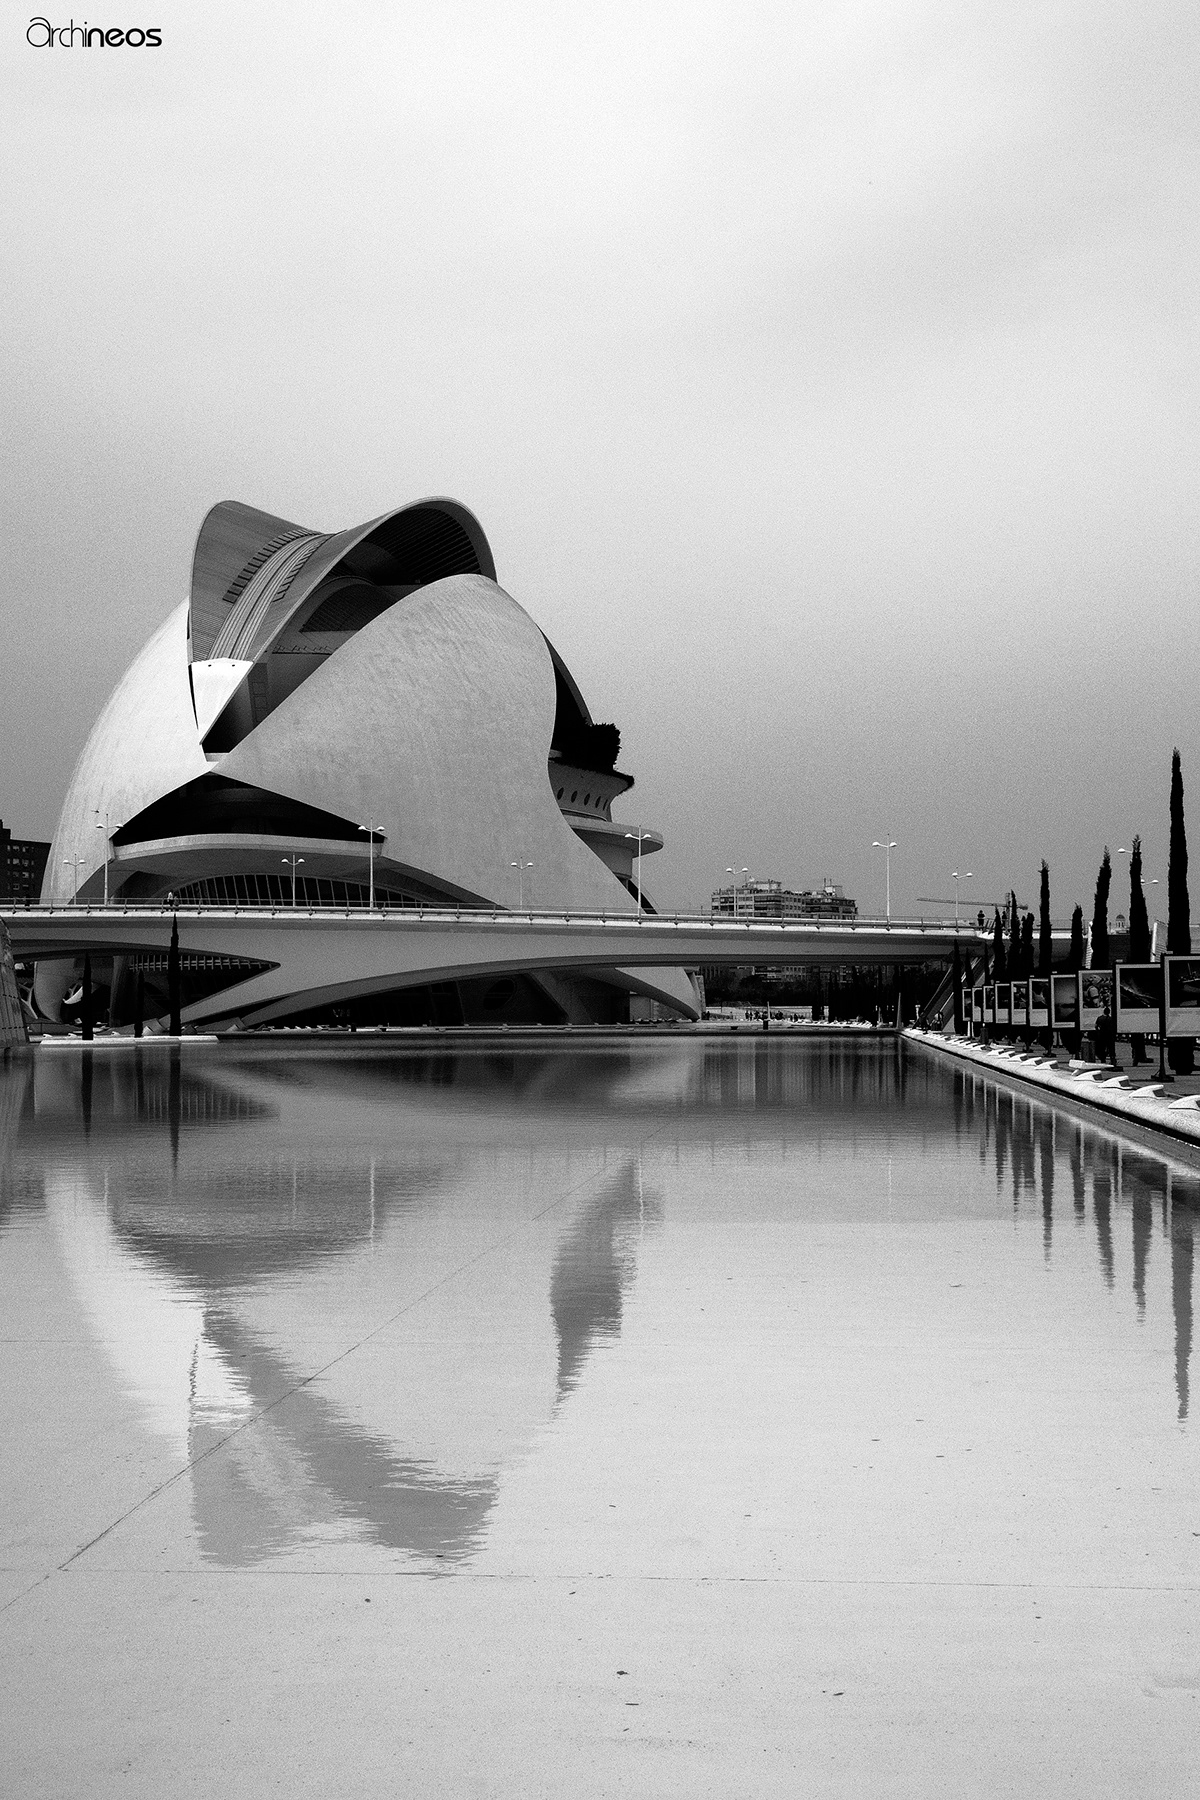 Architecture Photography valencia Ugo Villani Archineos monochrome calatrava